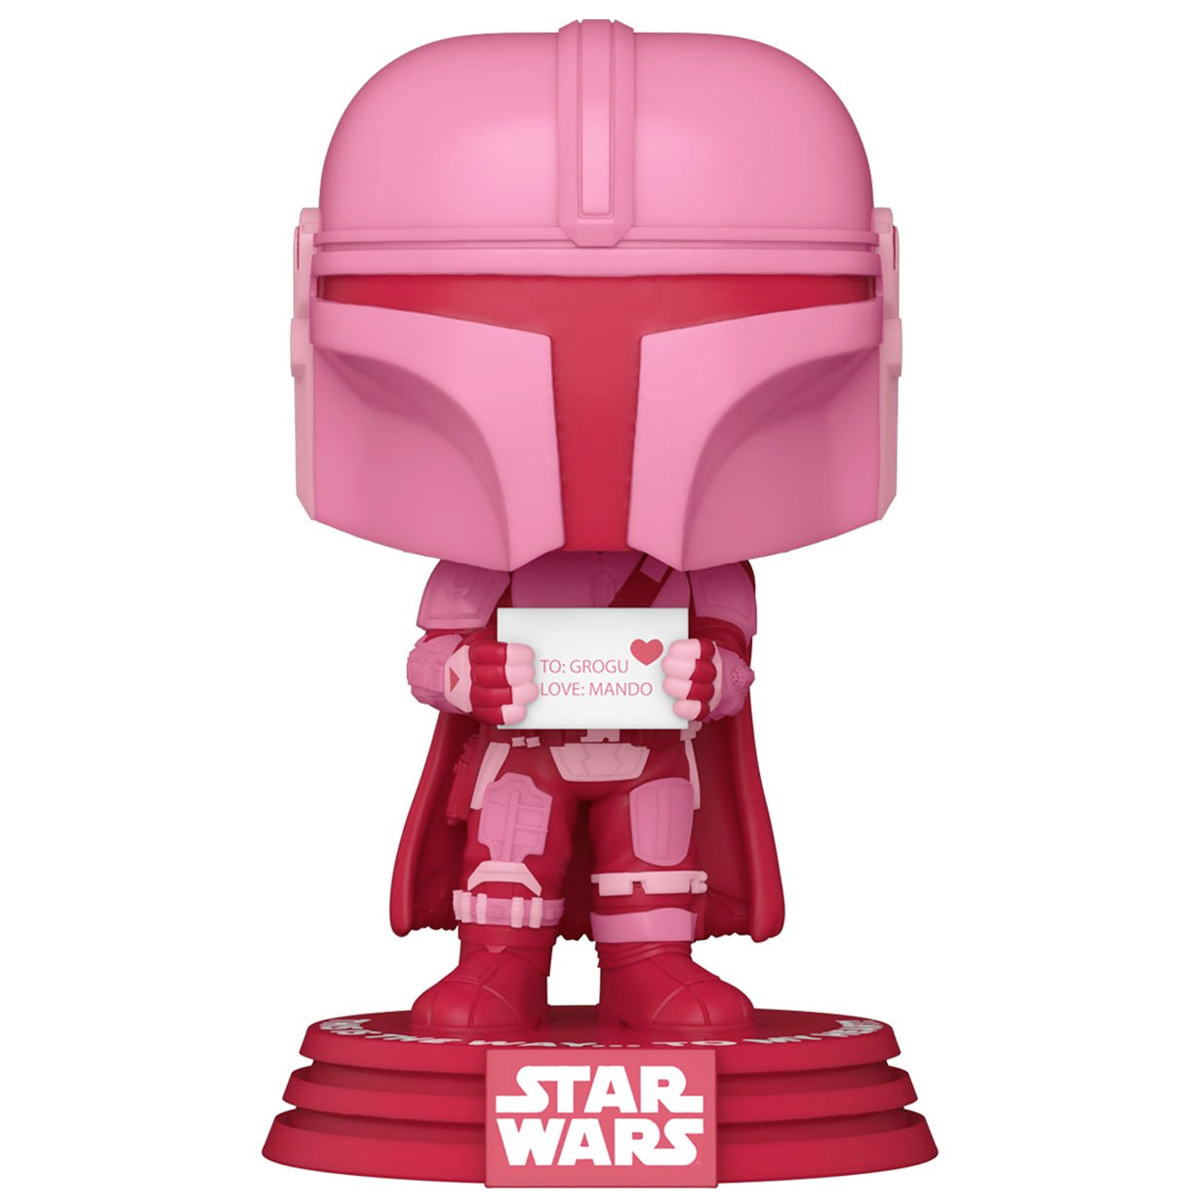 Bonecos Pop! Star Wars The Mandalorian em Tons de Rosa e Vermelho no Dia de São Valentim (Dia dos Namorados)